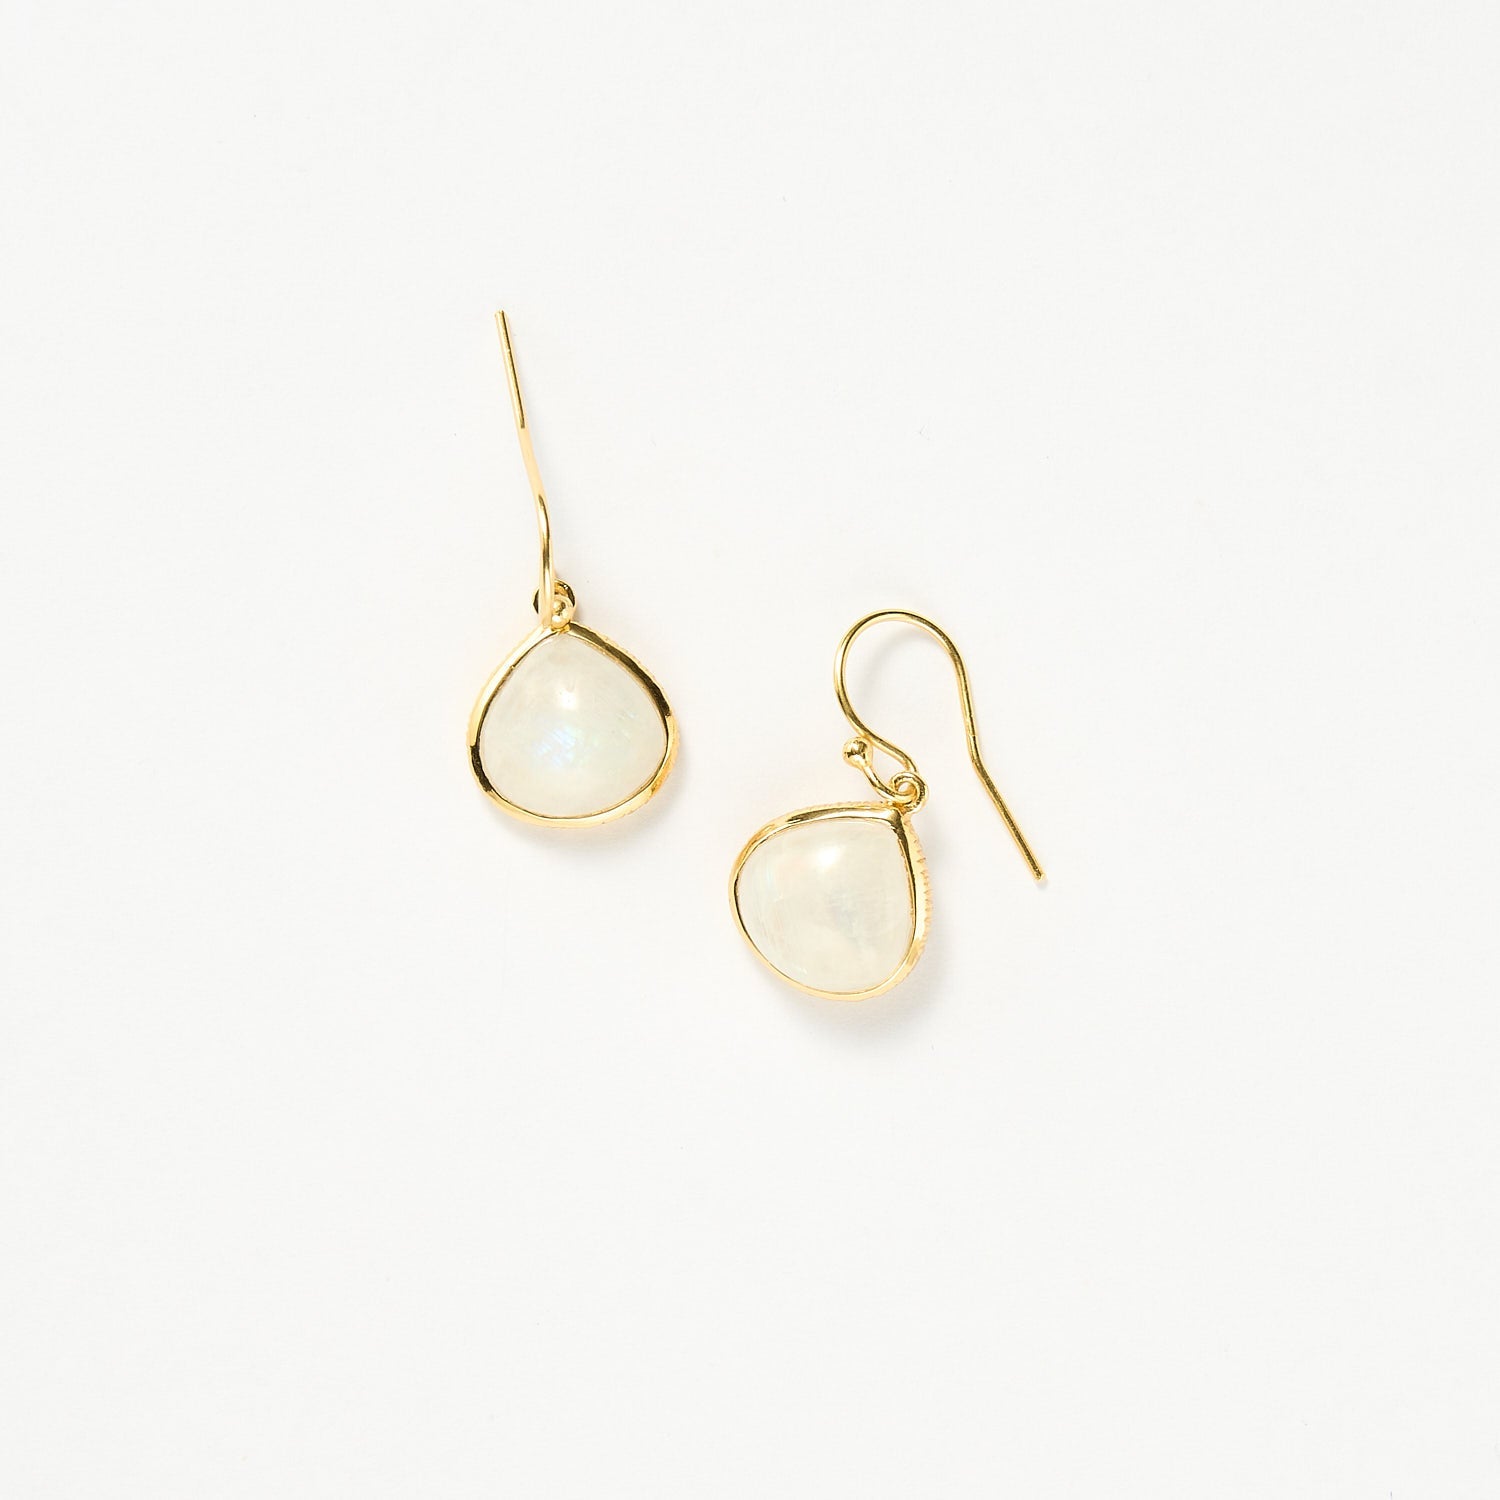 Maldives earrings - Moonstone, Gold 